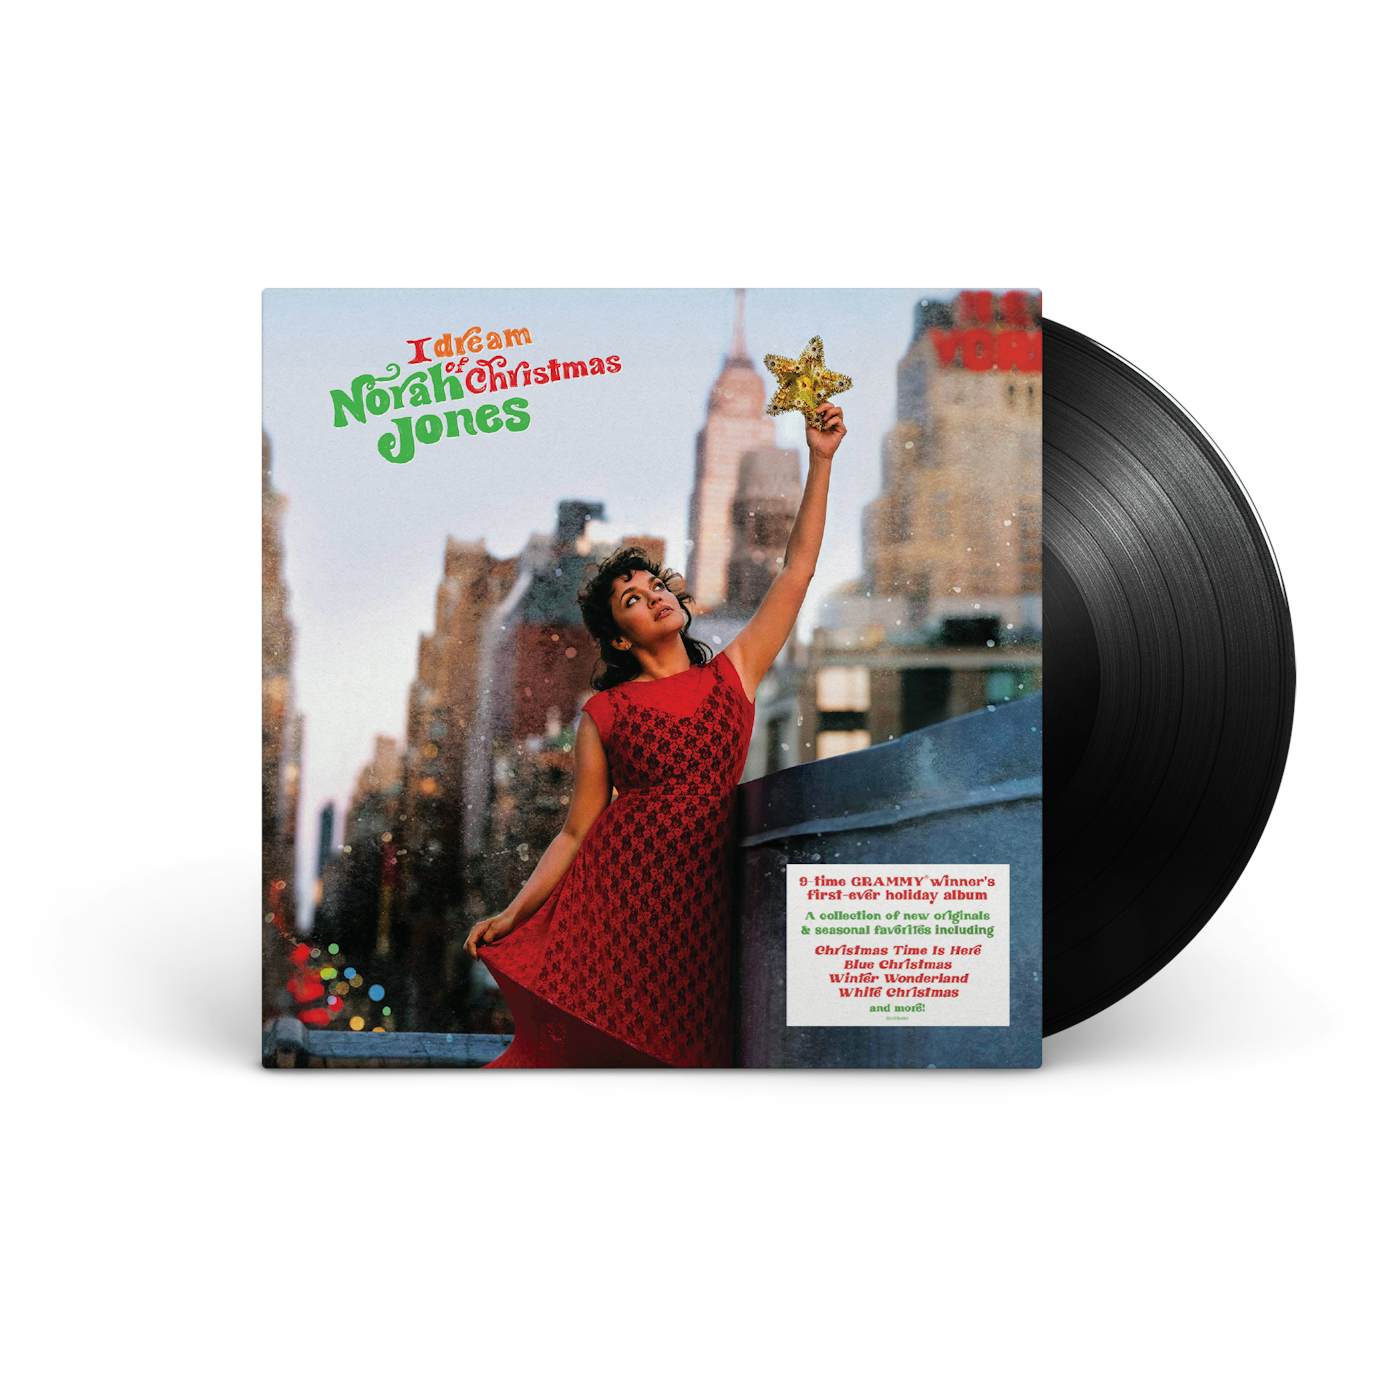 Norah Jones I Dream of Christmas Vinyl